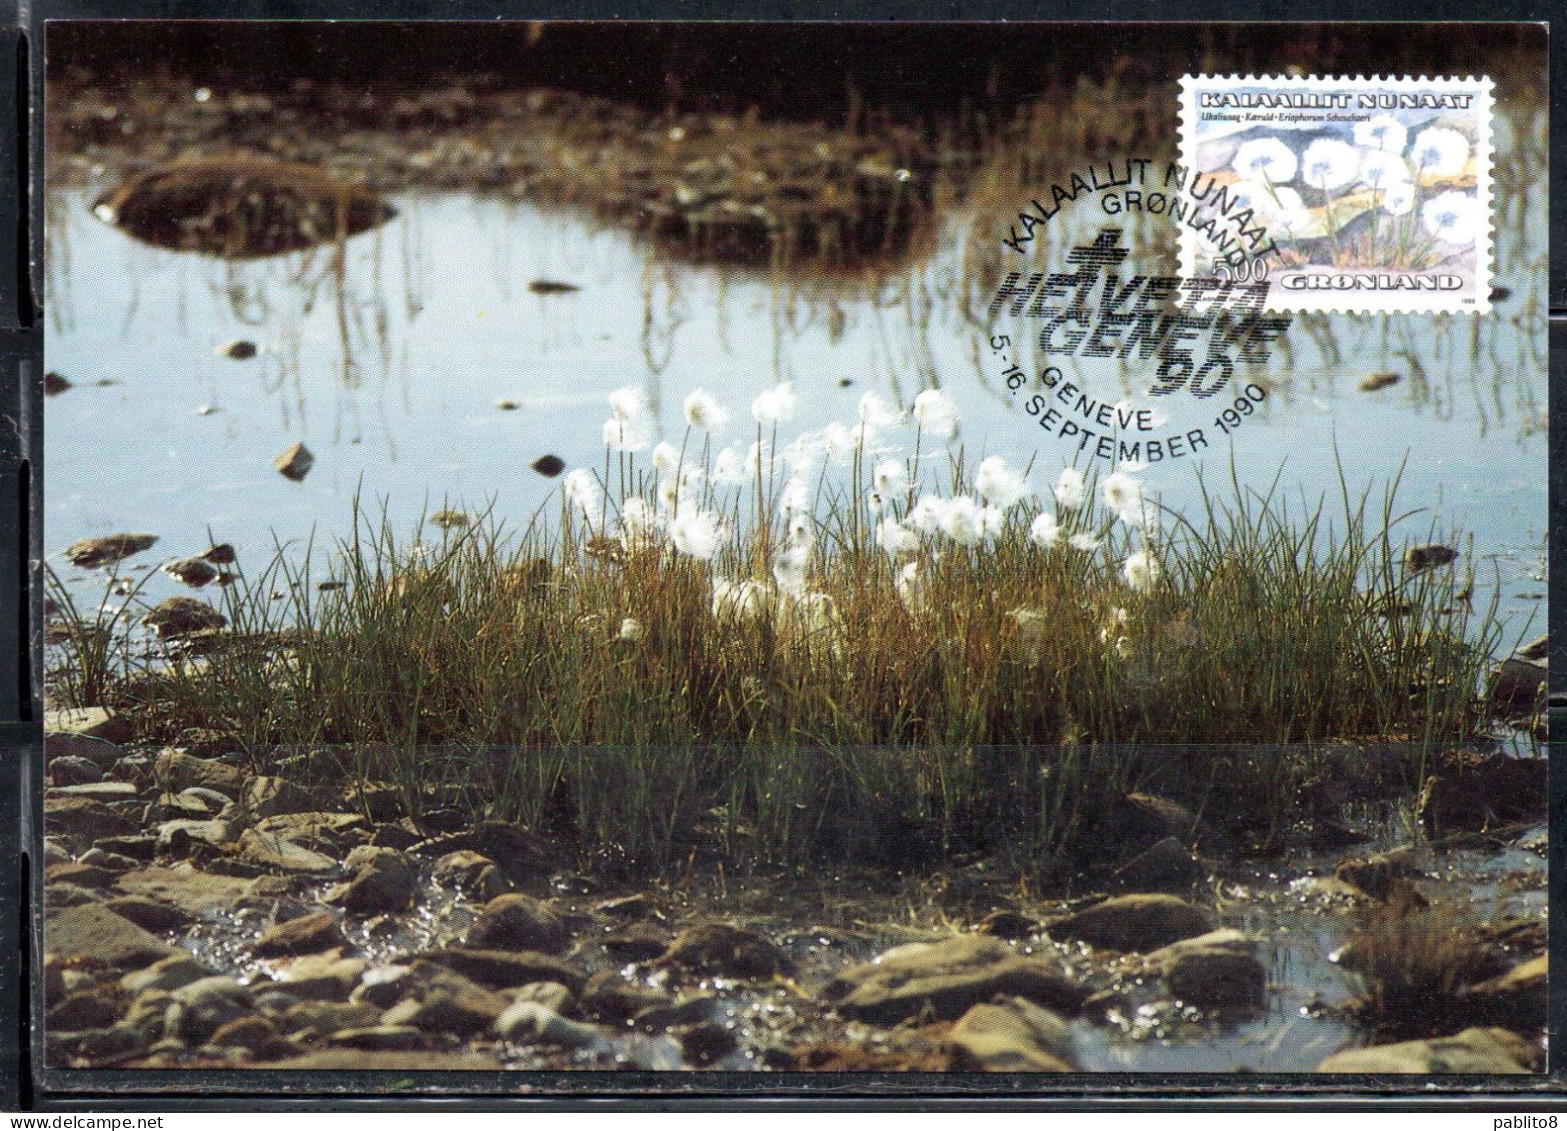 GREENLAND GRONLANDS GROENLANDIA GRØNLAND 1989 1992 1990 FLORA PLANTS ERIOPHORUM SCHEUCHZERI 5k MAXI MAXIMUM CARD CARTE - Cartoline Maximum